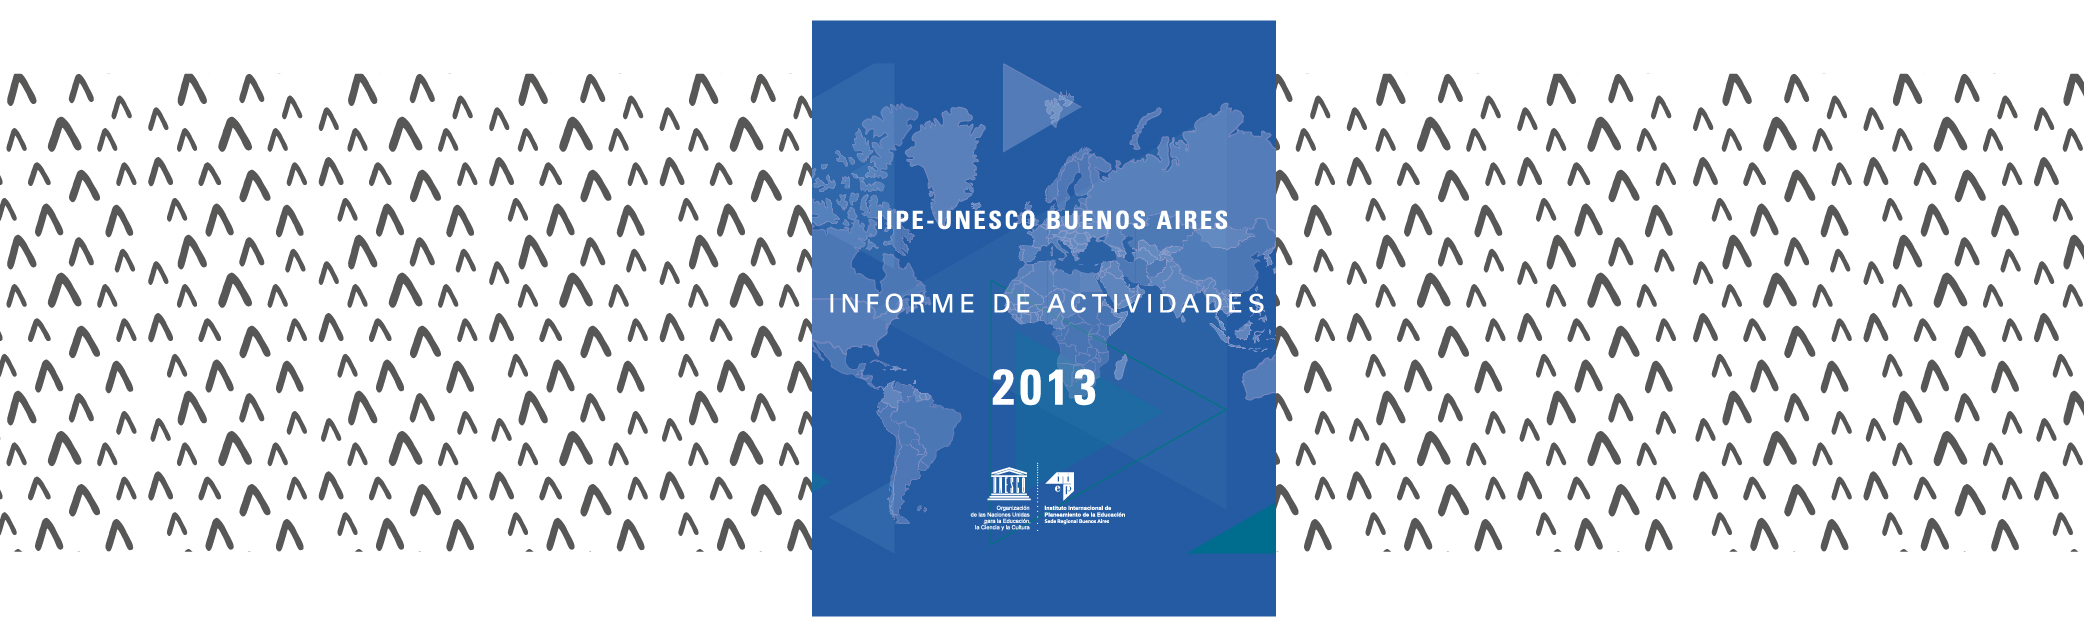 Informe de actividades 2013